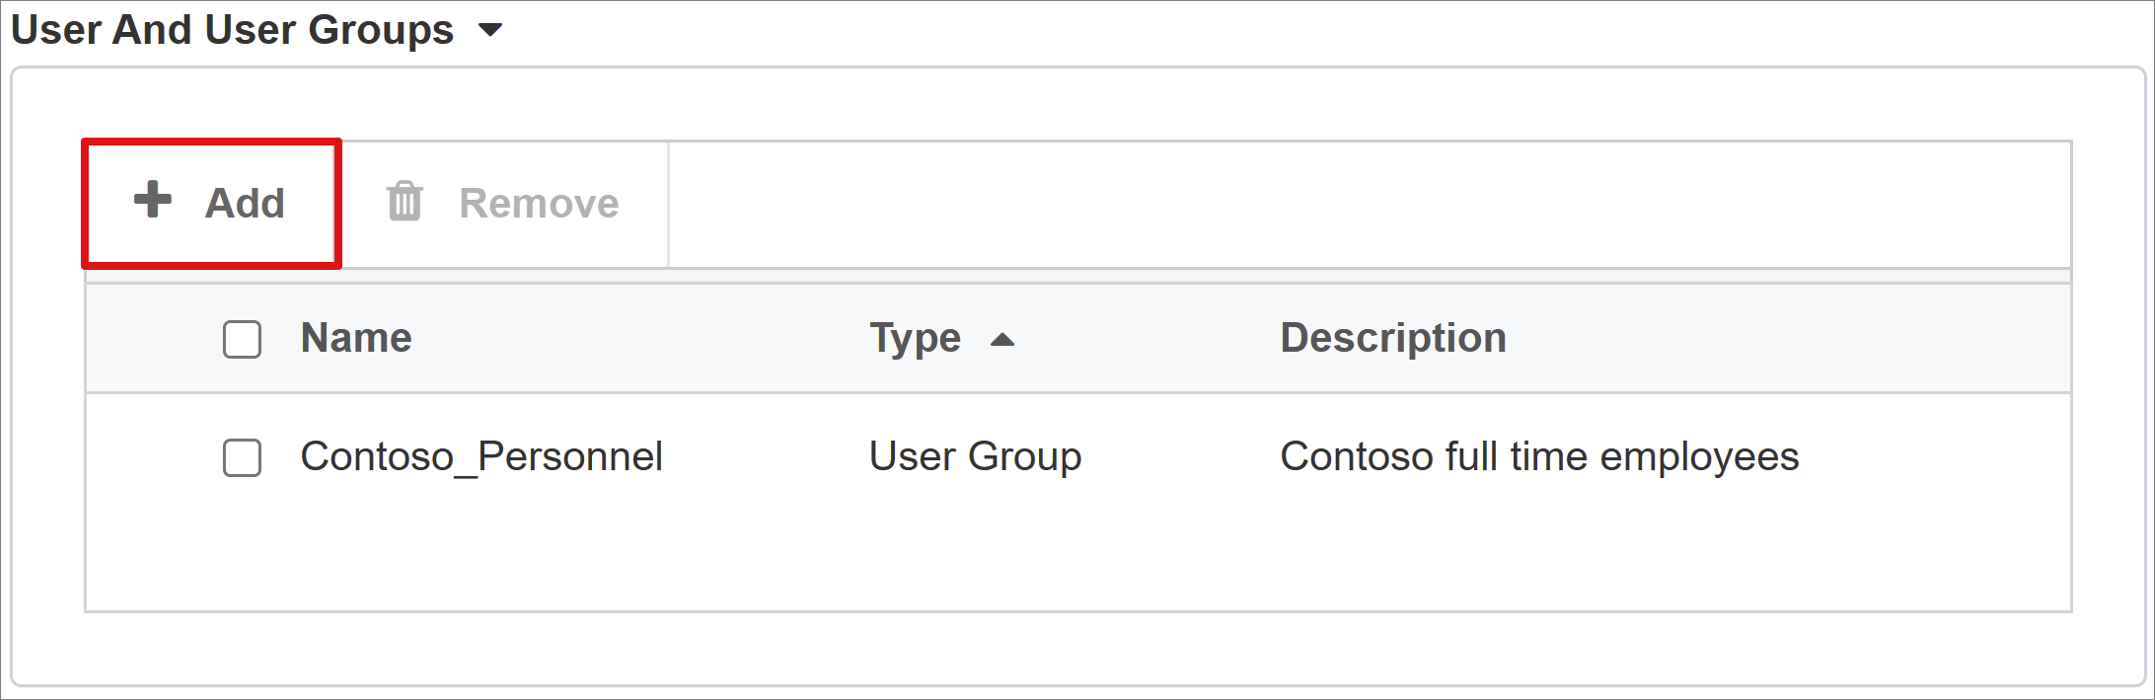 Capture d’écran de l’option Add dans la section User And User Groups.